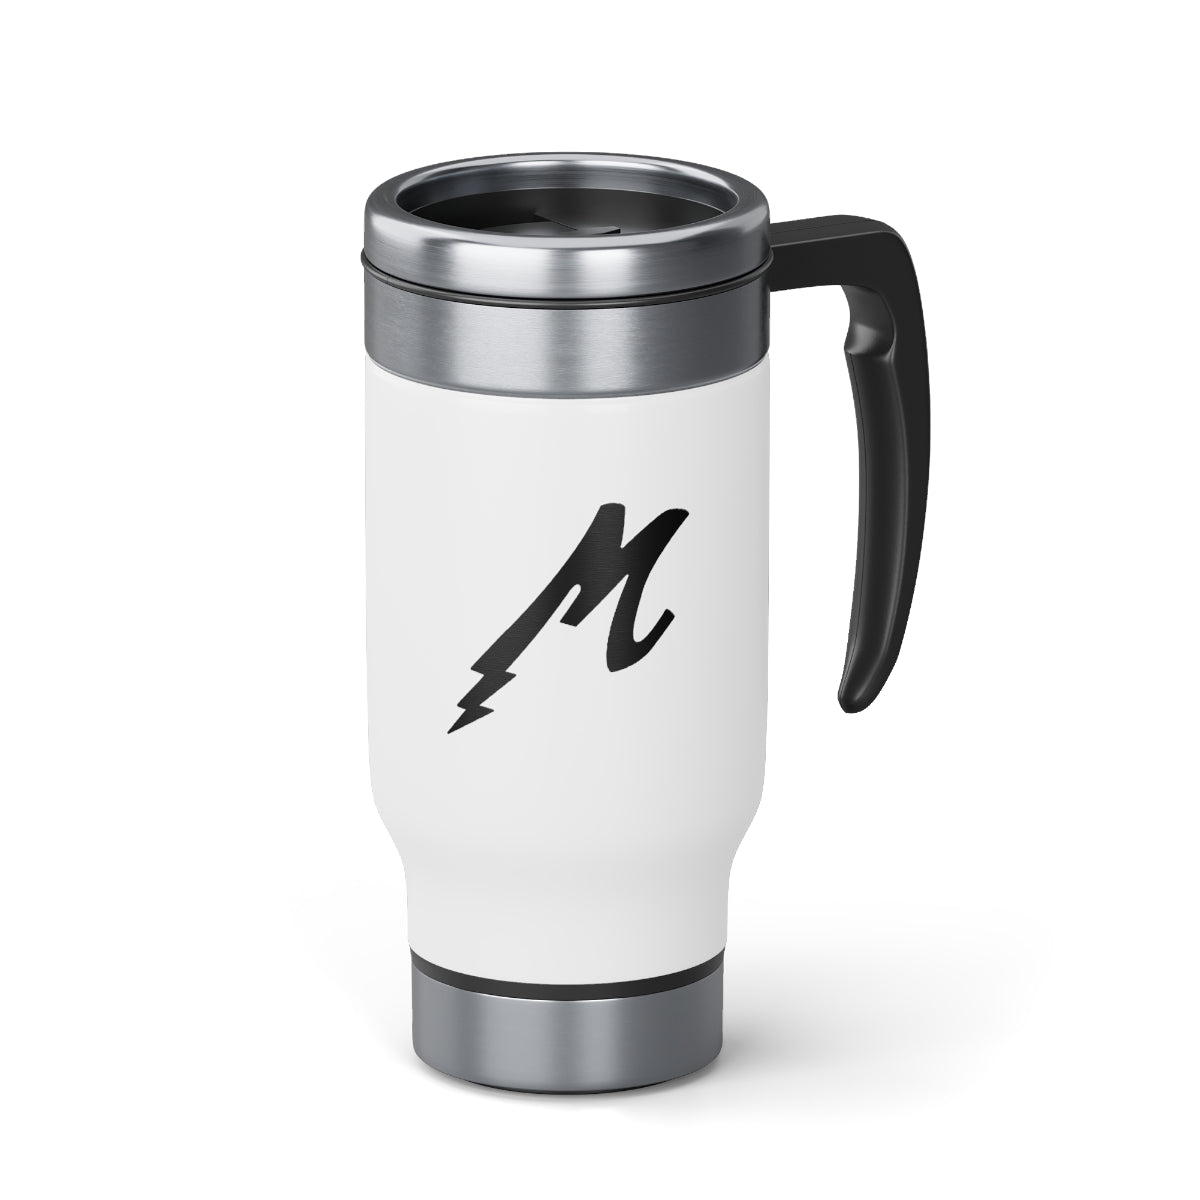 Maza Black Lightning Stainless Steel Travel Mug with Handle, 14oz